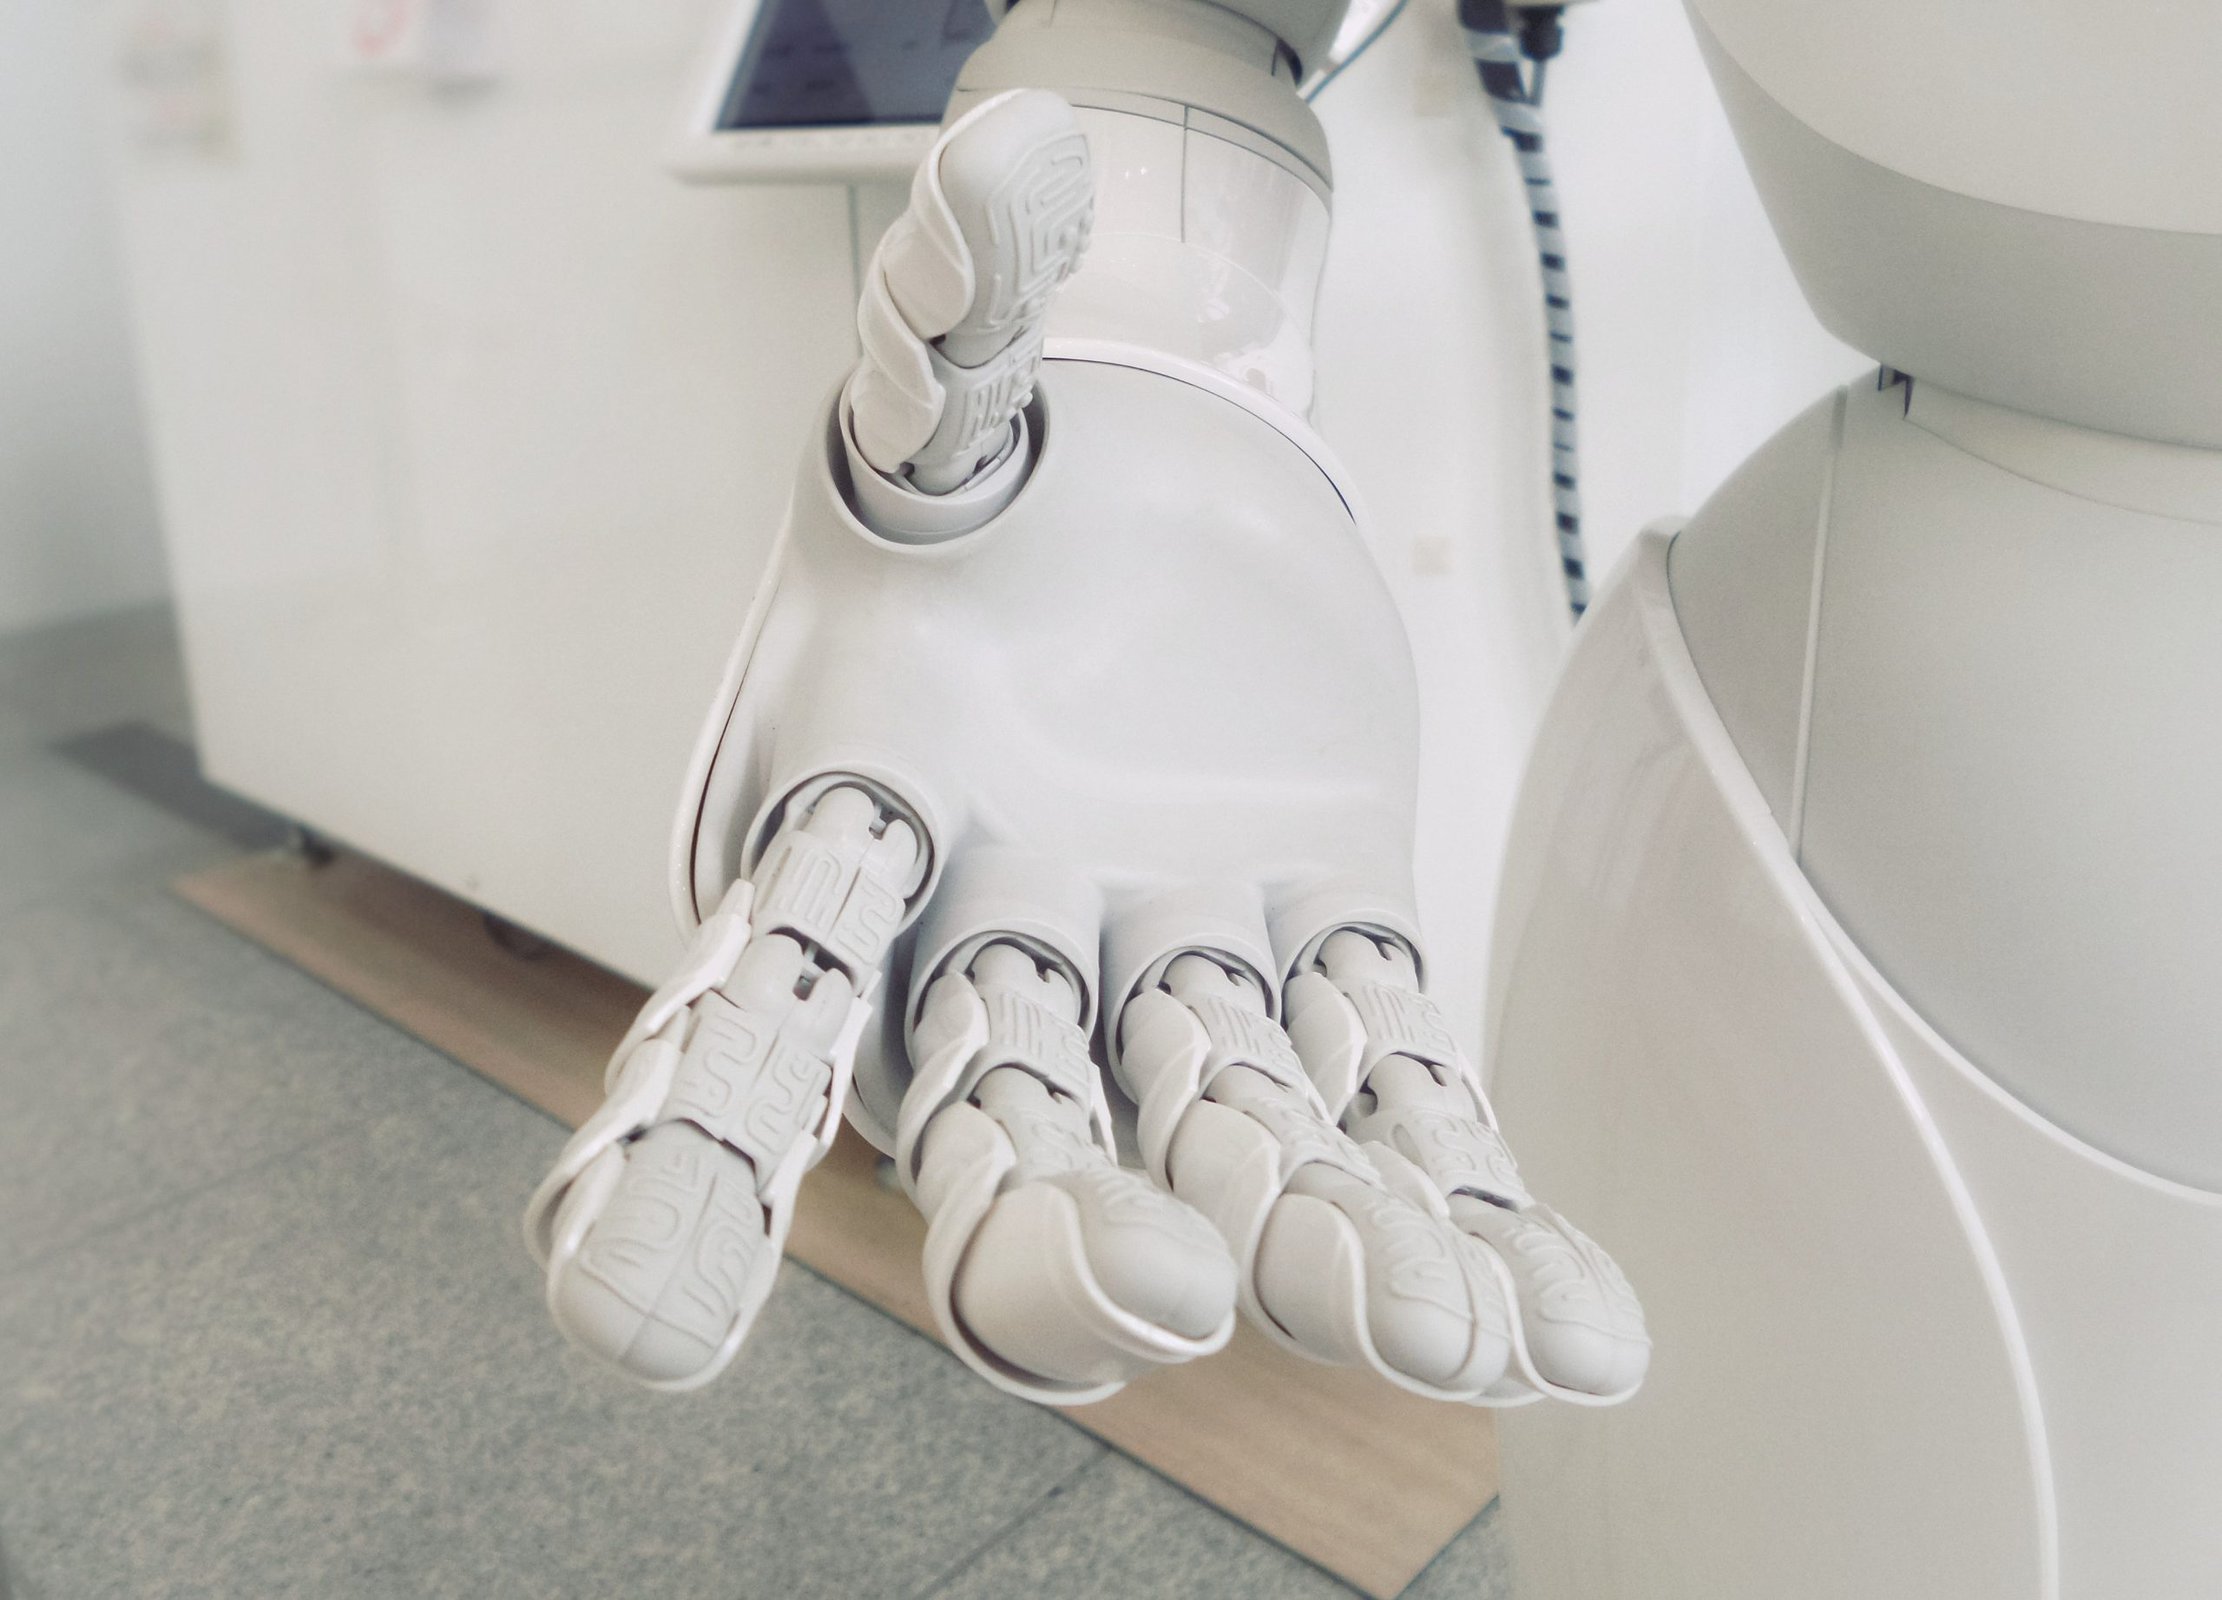 Robot industriële automatisering